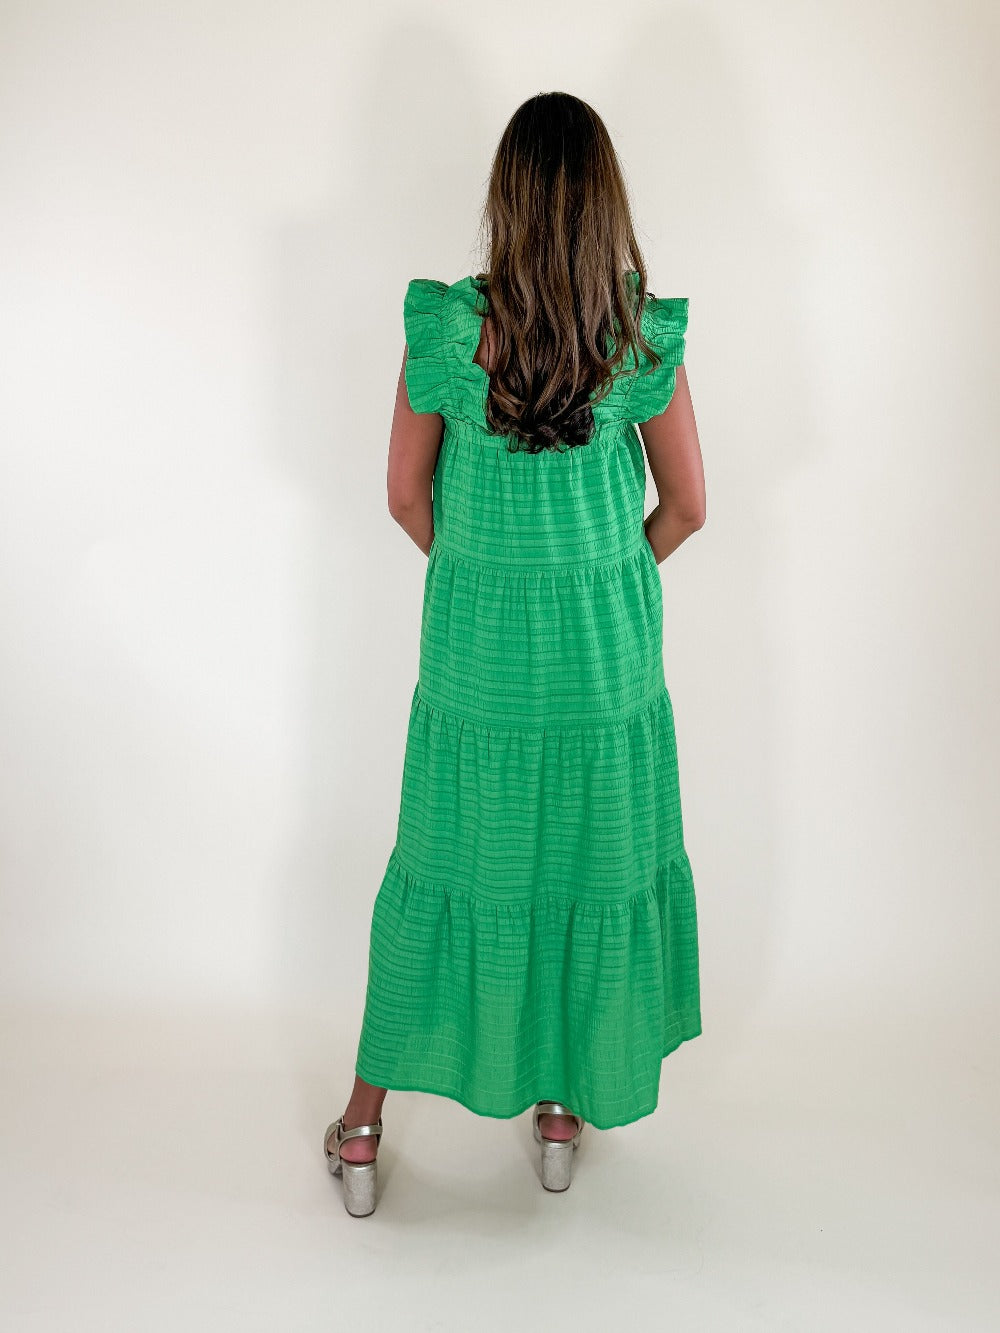 Nelson_Green_Textured_Green_Maxi_Dress